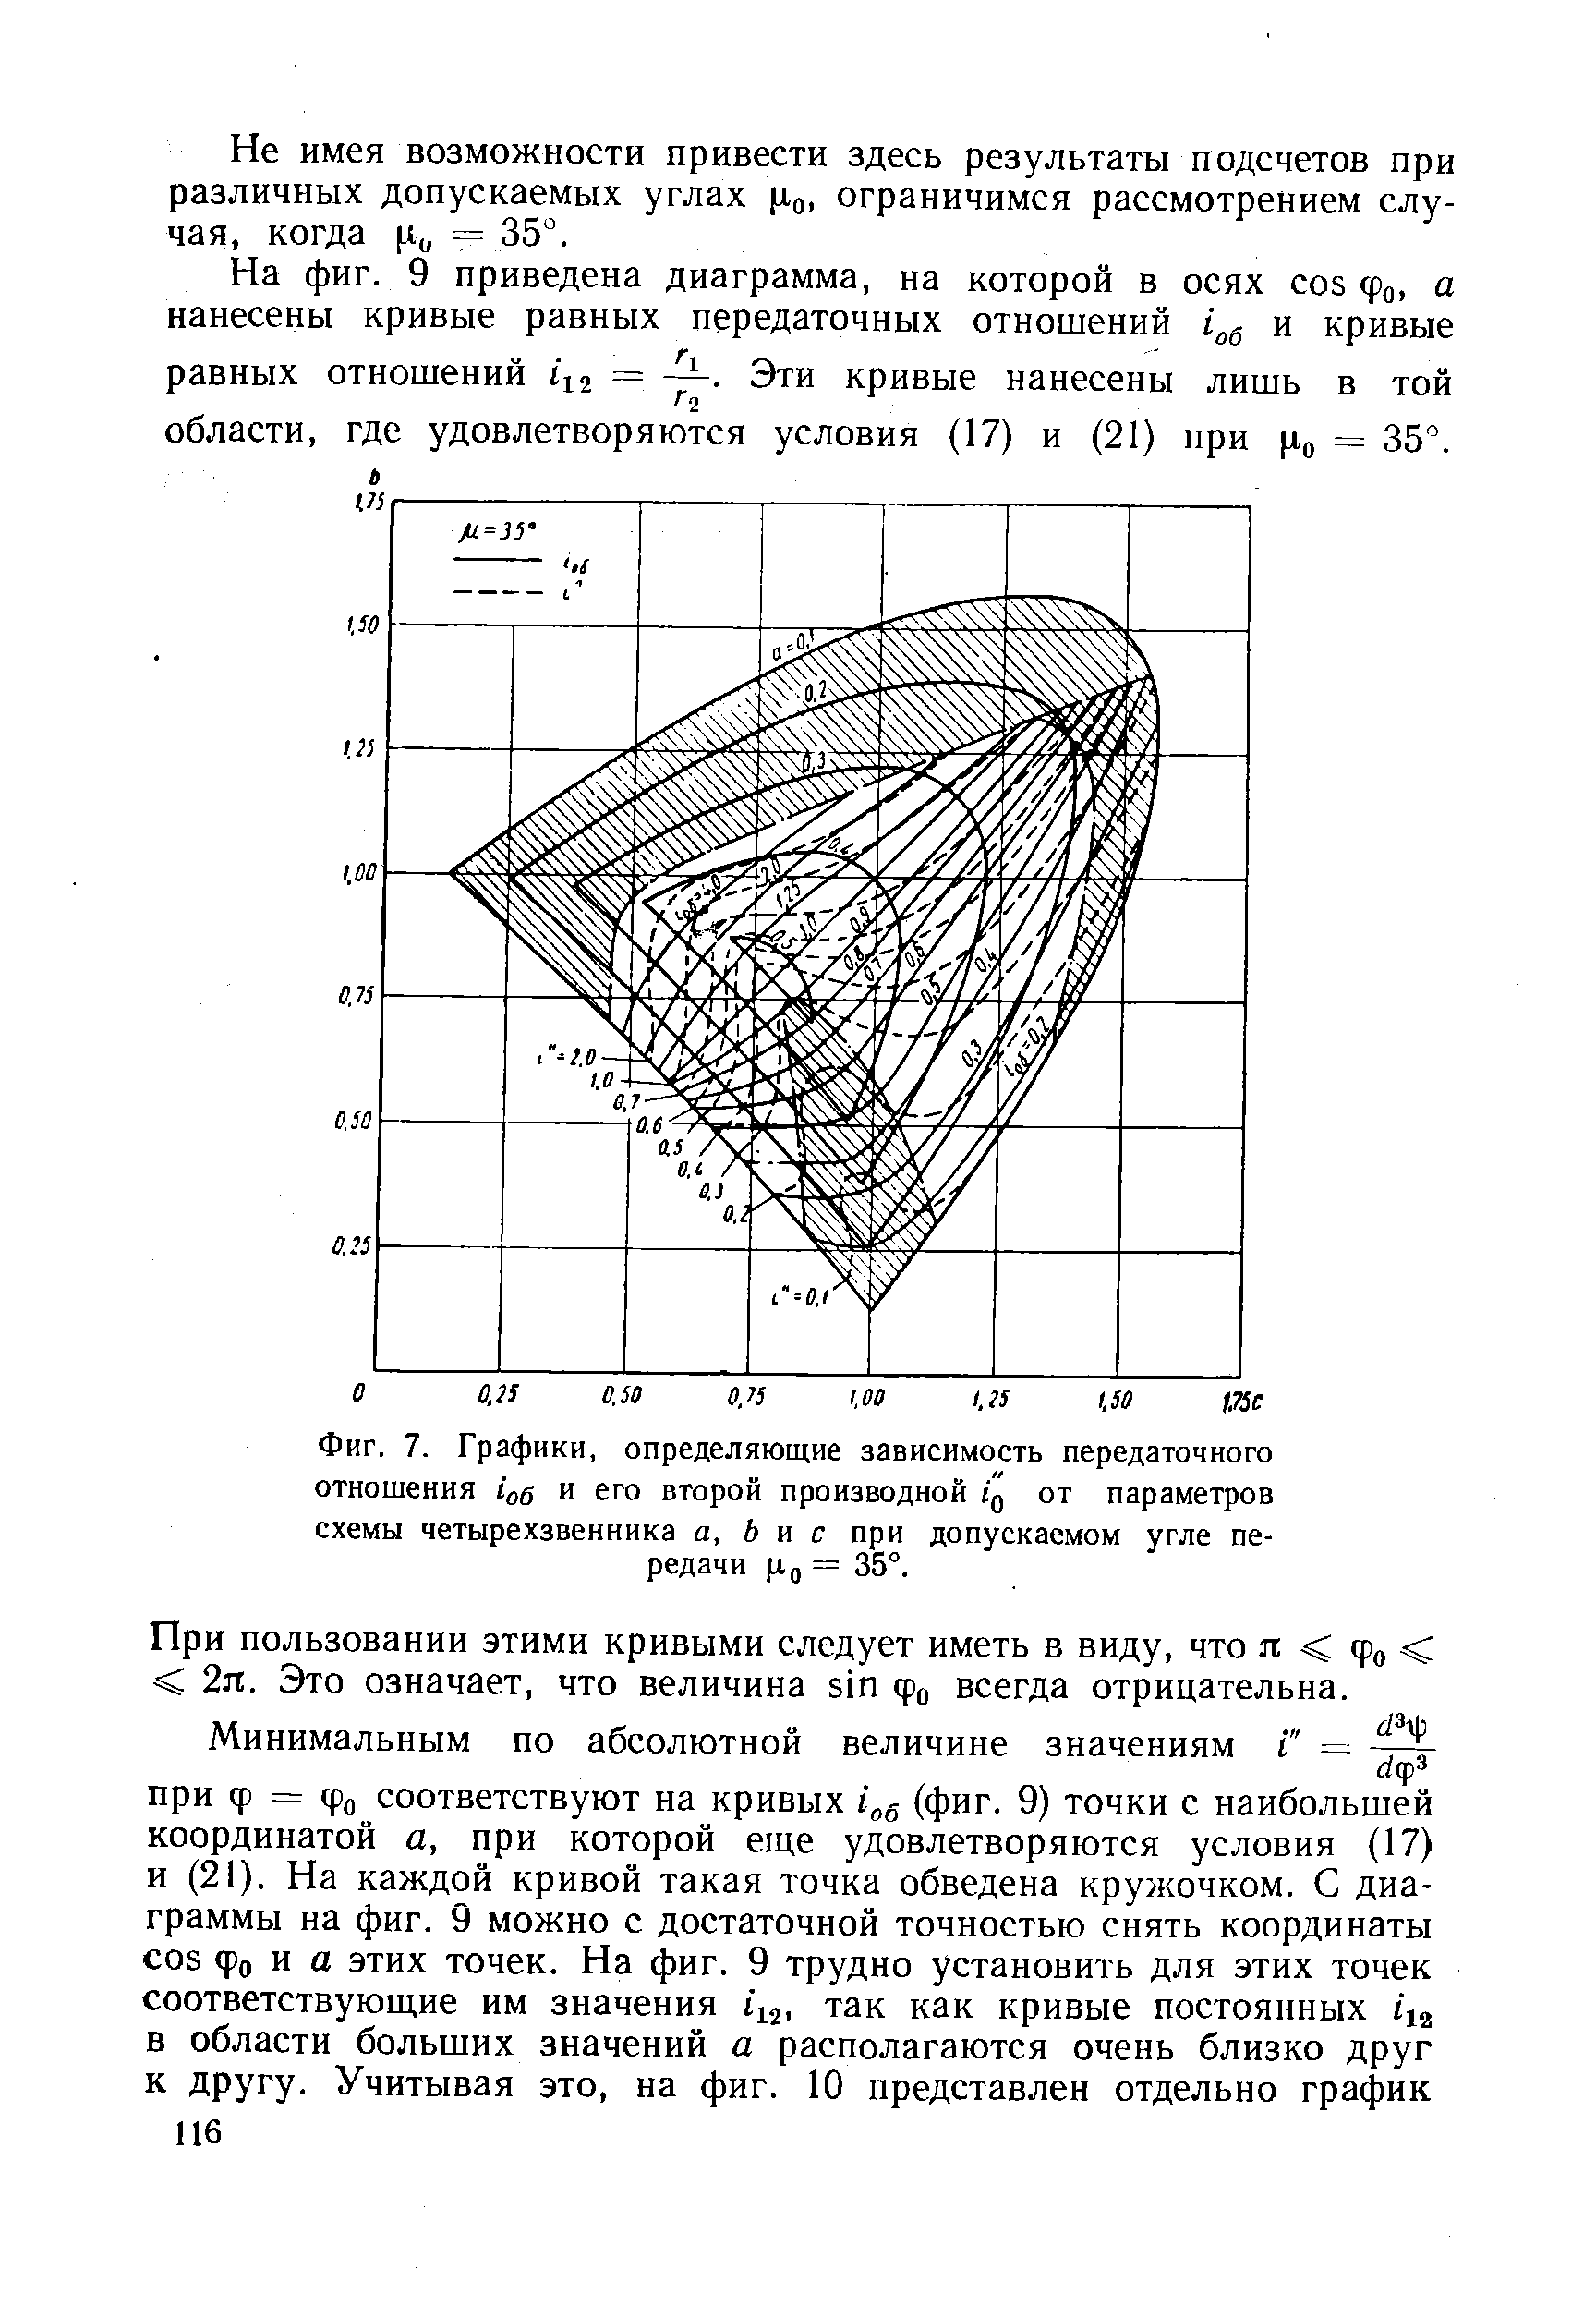 Фиг. 7. Графики, определяющие зависимость передаточного отношения io6 и его второй производной q от параметров схемы четырехзвенника а, Ь и с при допускаемом угле передачи = 35°.
